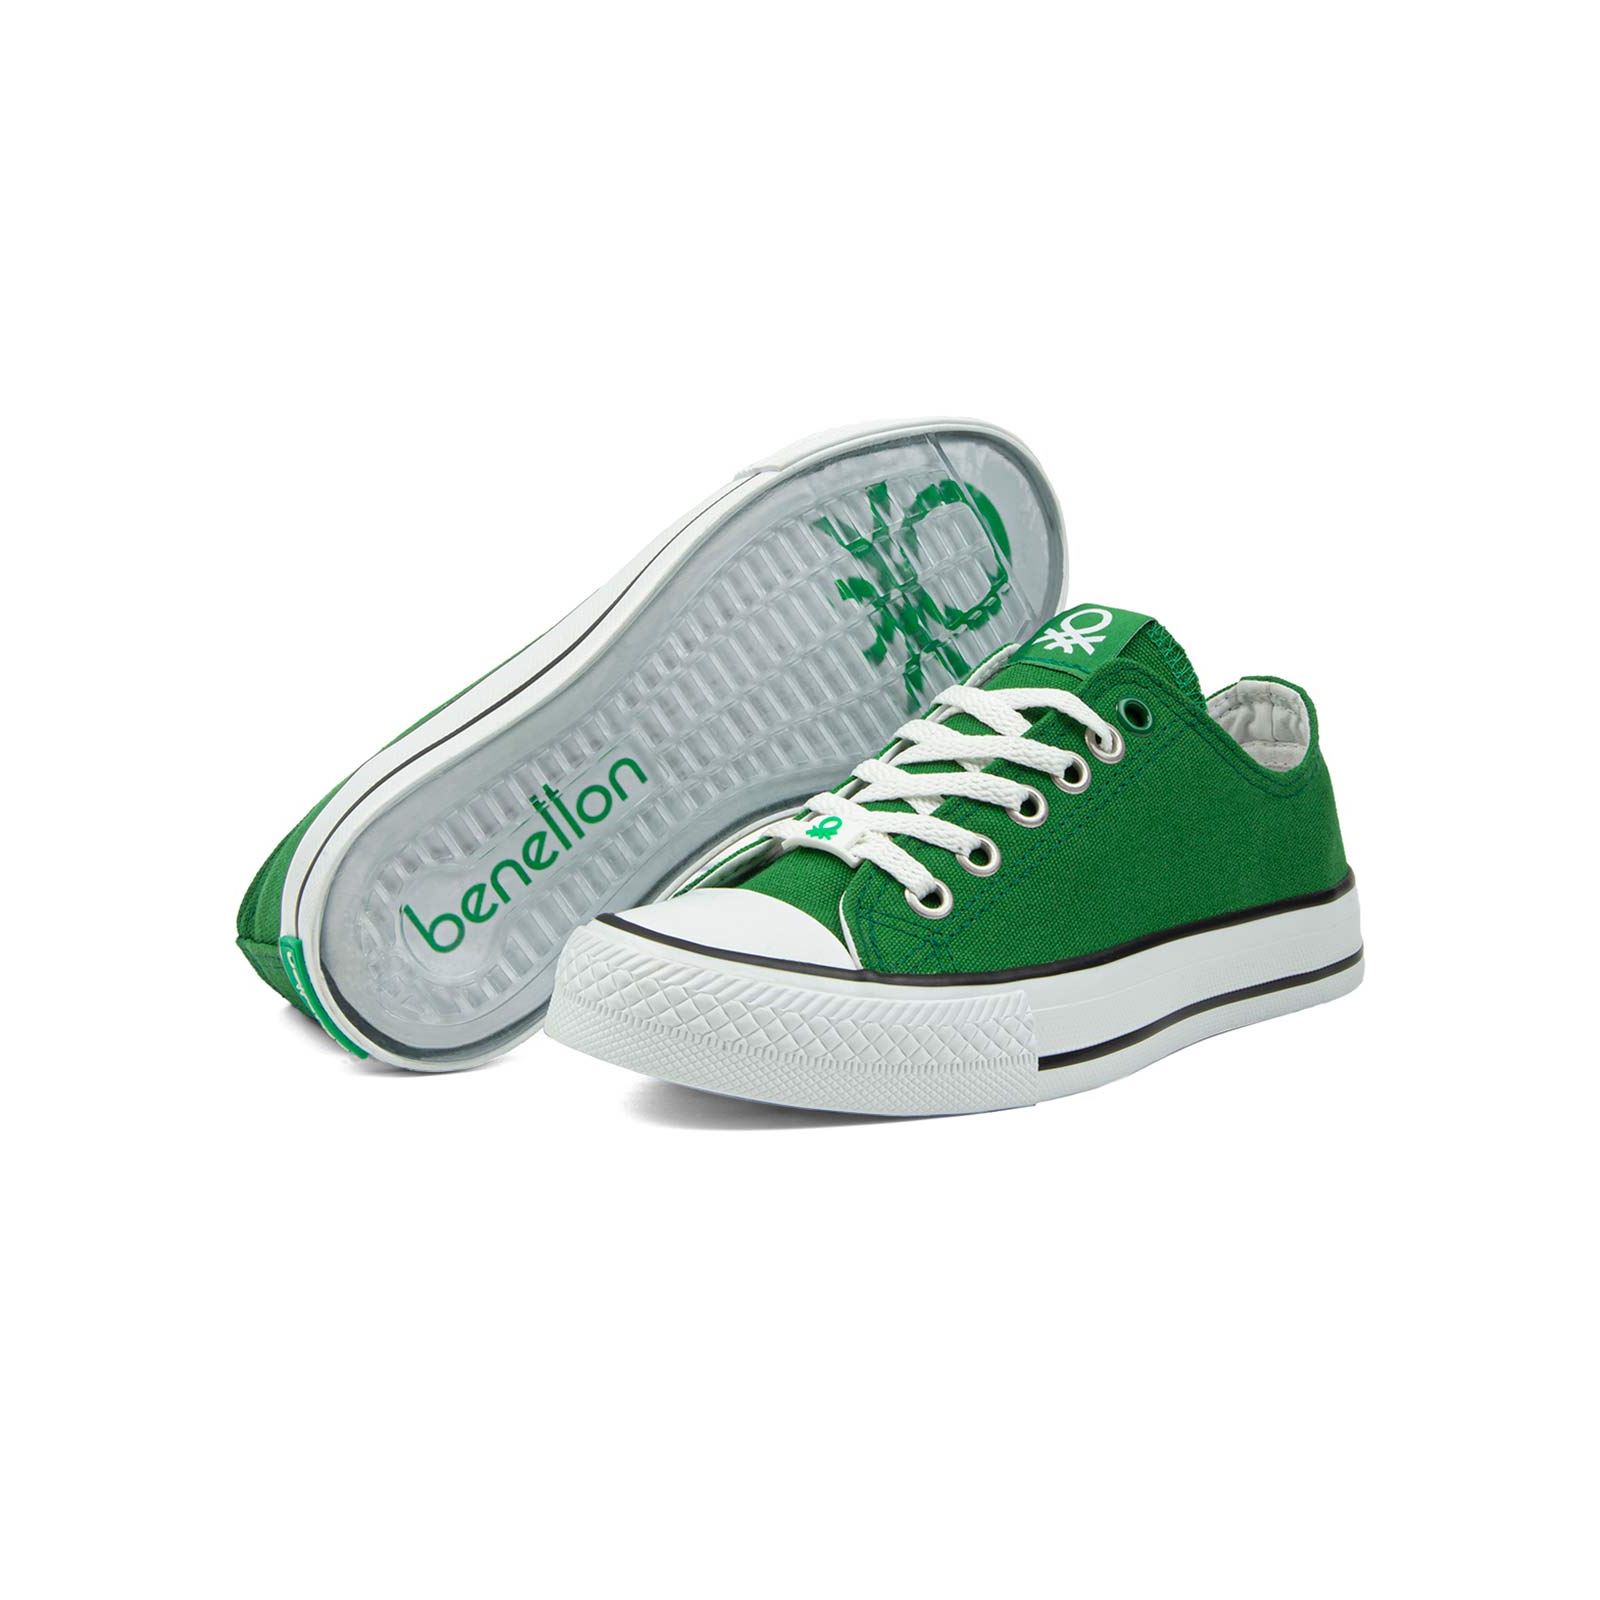 Benetton Erkek Çocuk Spor Ayakkabı 31-35 Numara Yeşil